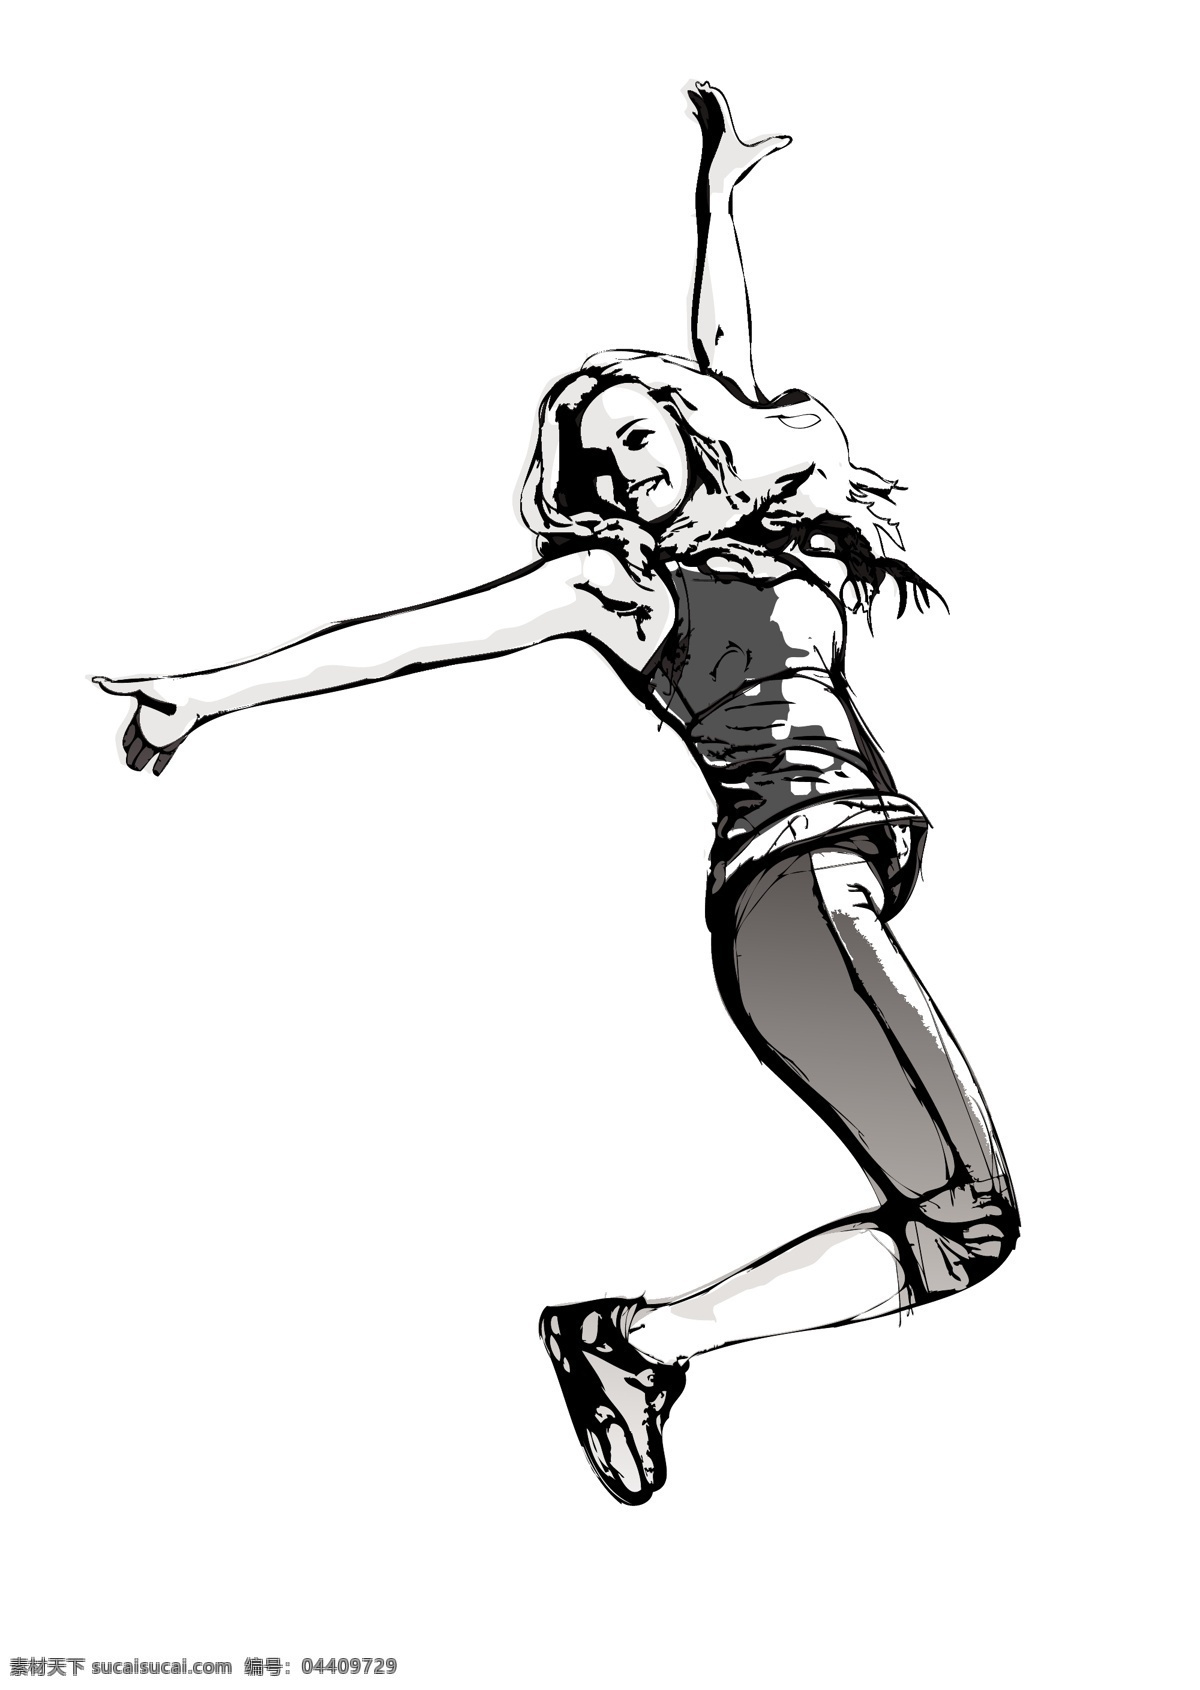 跳跃的女孩 跳跃 手绘人物 运动 健身 活动 人物插画 其他人物 矢量人物 矢量素材 白色